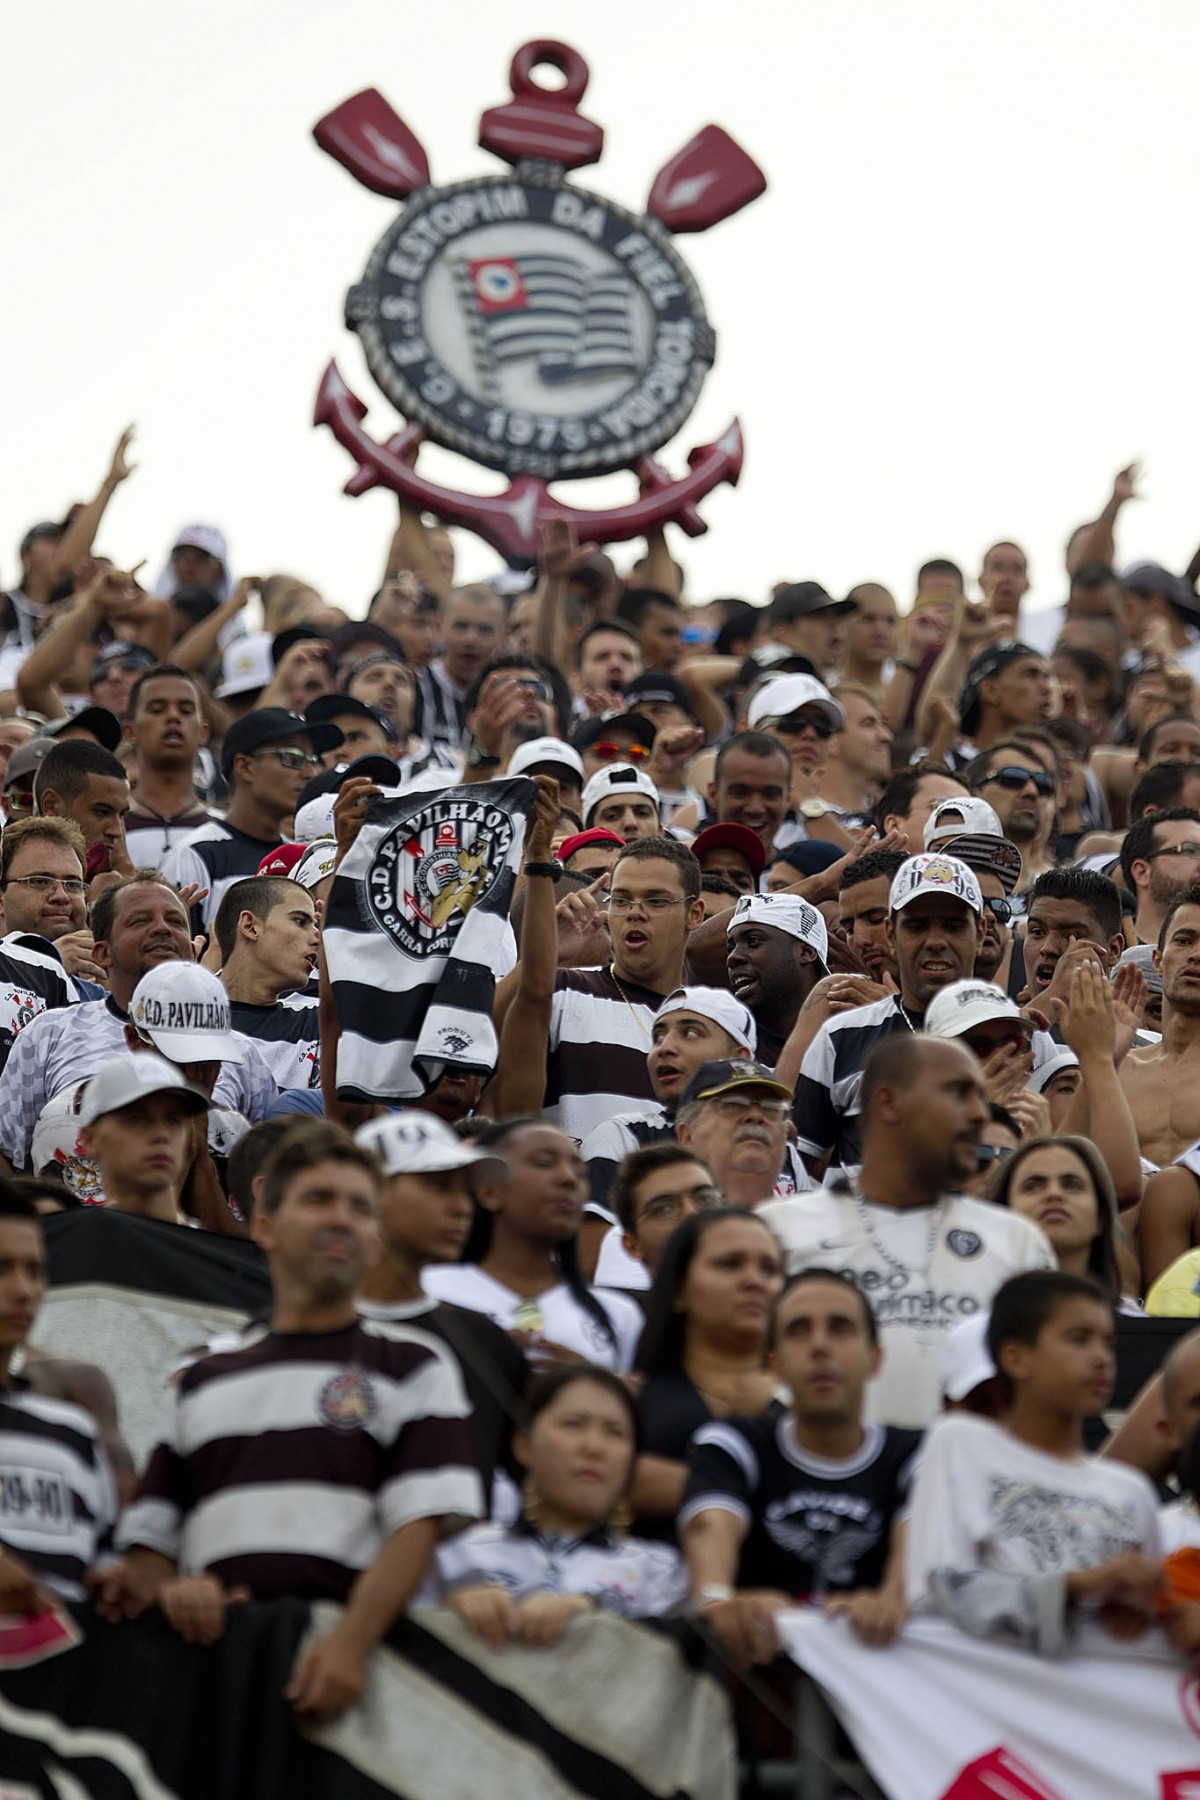 Durante a partida entre Santos x Corinthians realizada esta tarde no estdio do Morumbi, jogo vlido pela 10 rodada do Campeonato Paulista de 2013